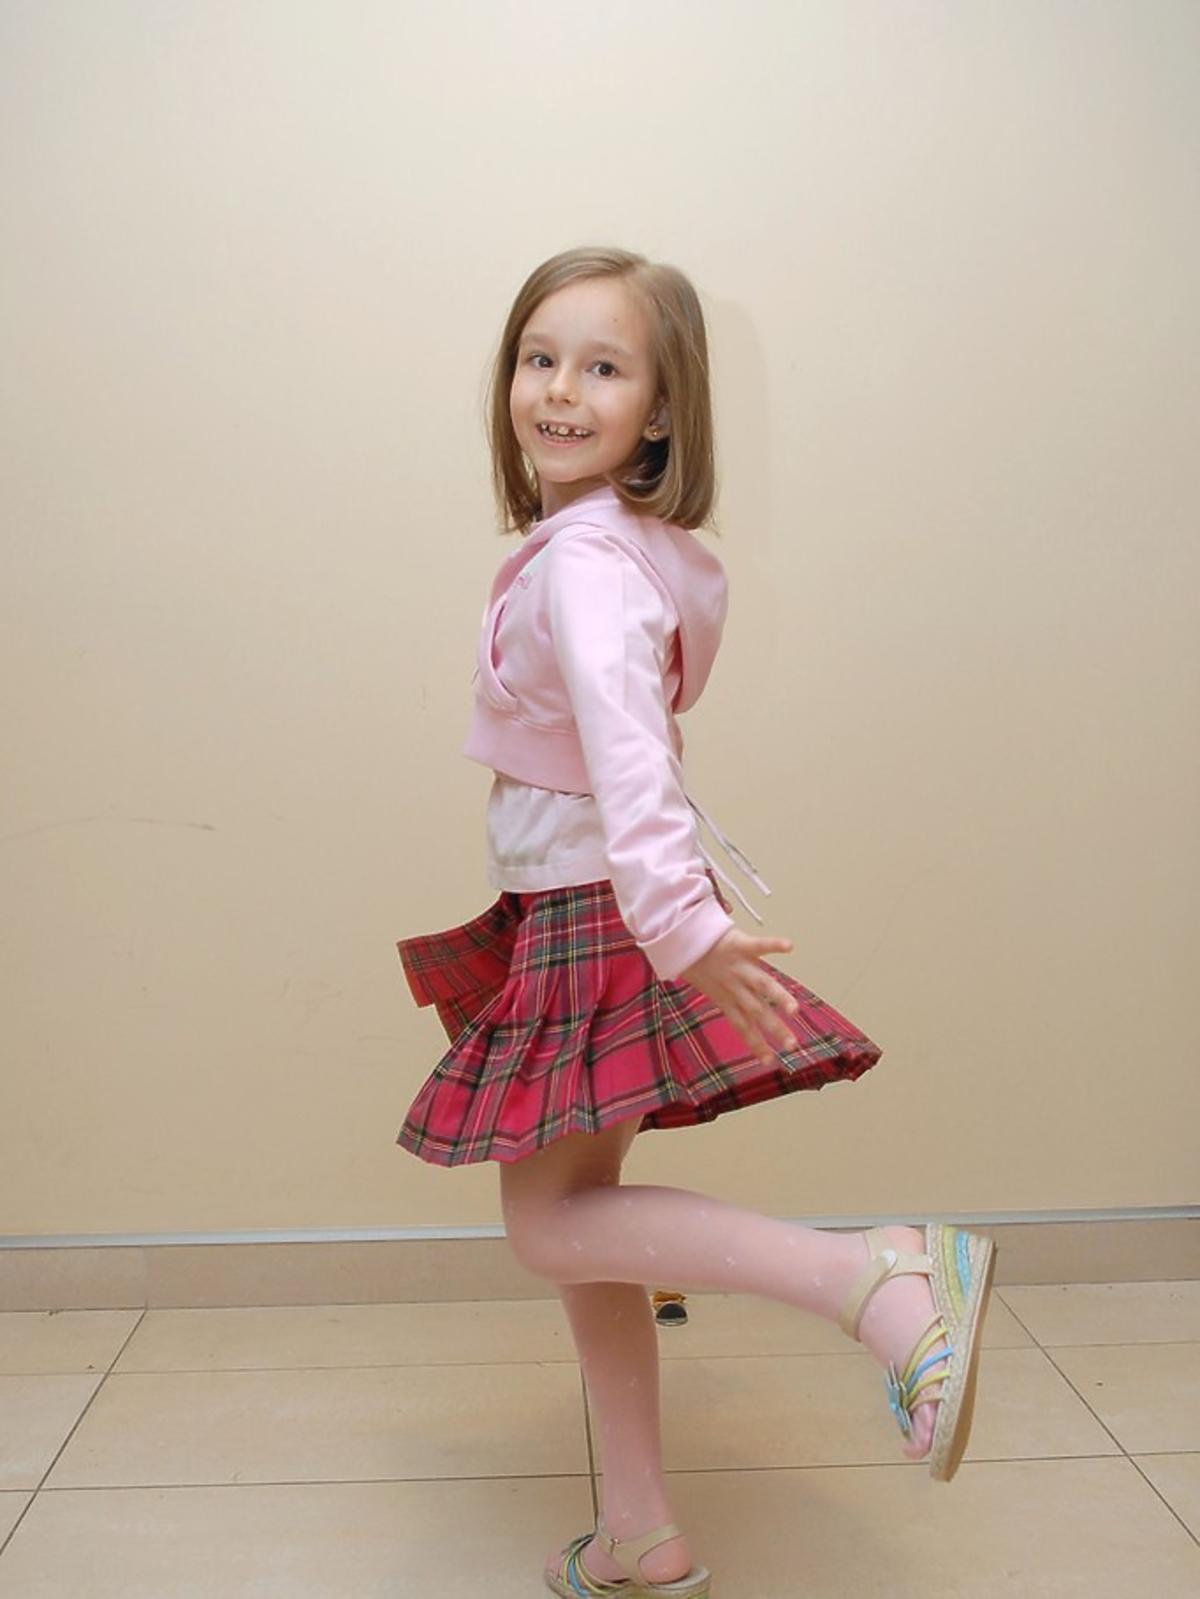 Emilka w wieku 5 lat zdobyła koronę Miss Wdzięku i Urody